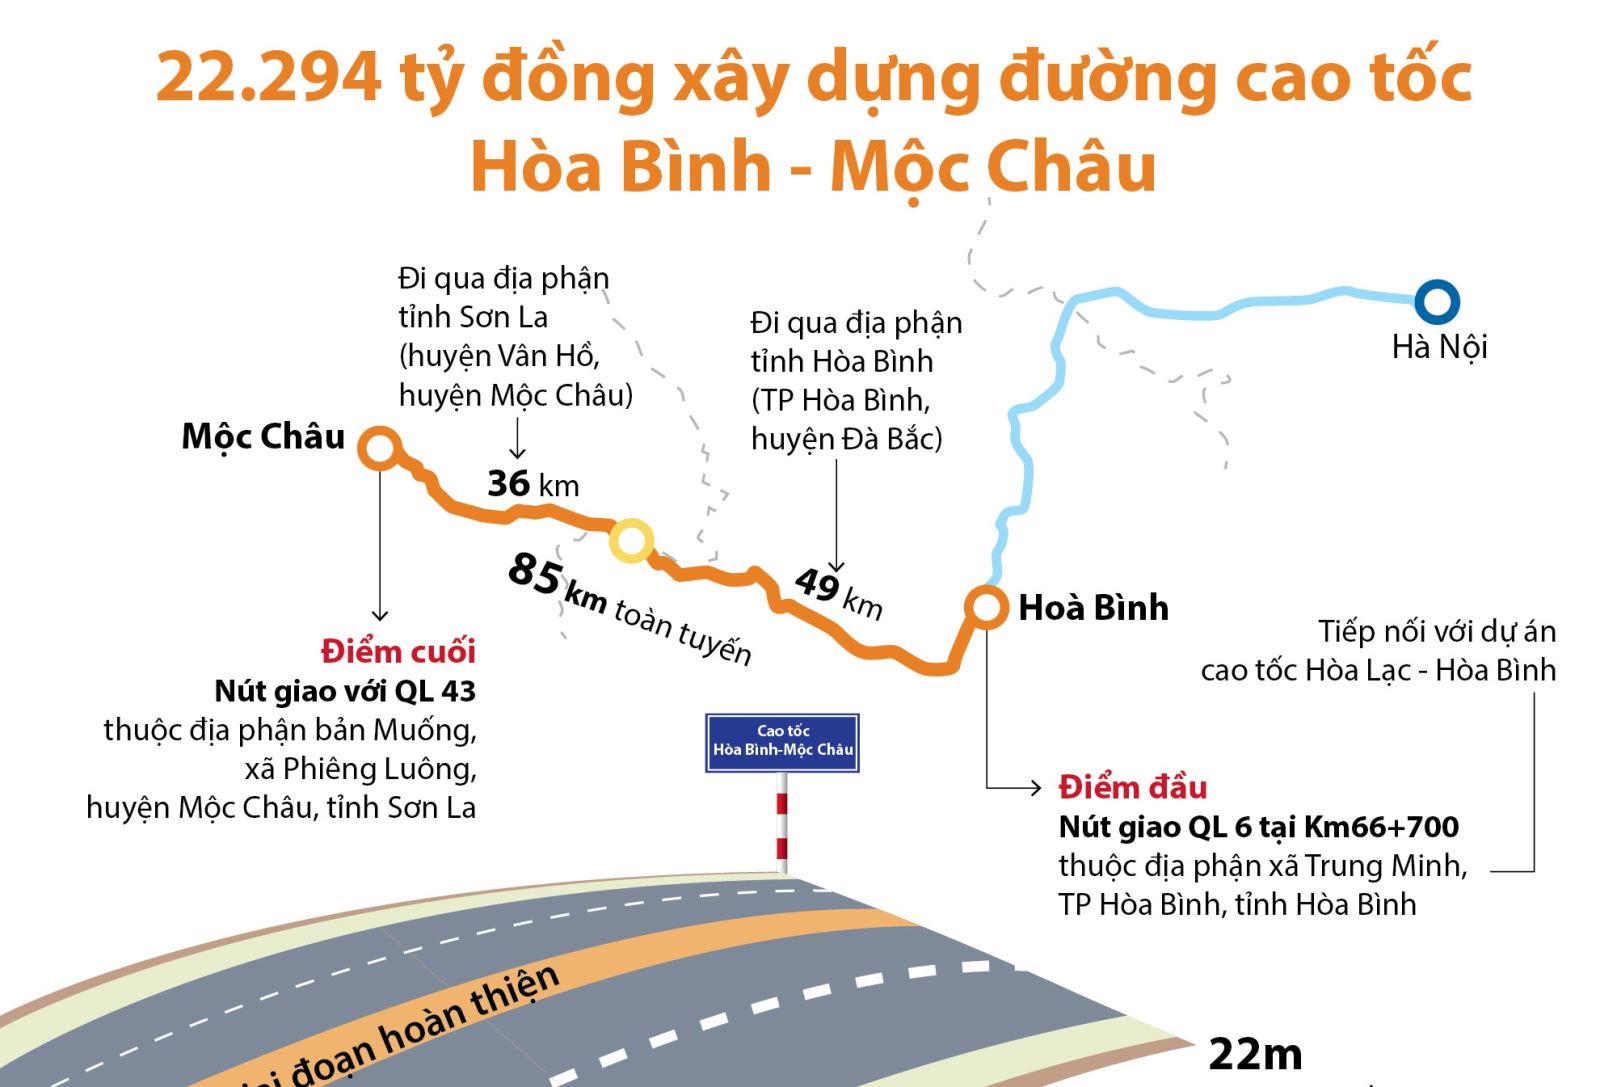 Đường cao tốc Hòa Bình - Mộc Châu là một tuyến đường mới và sạch đẹp nhất Việt Nam hiện nay. Với kiến trúc hiện đại, trải bề mặt tuyệt vời, tuyến đường này đem lại cho người lái xe cảm giác an toàn và thoải mái. Ngoài ra, cảnh sắc đồng cỏ, hoa lá trên tuyến đường này quả thực là không gì tuyệt vời hơn. Hãy cùng chiêm ngưỡng hình ảnh độc đáo của Đường cao tốc Hòa Bình - Mộc Châu.